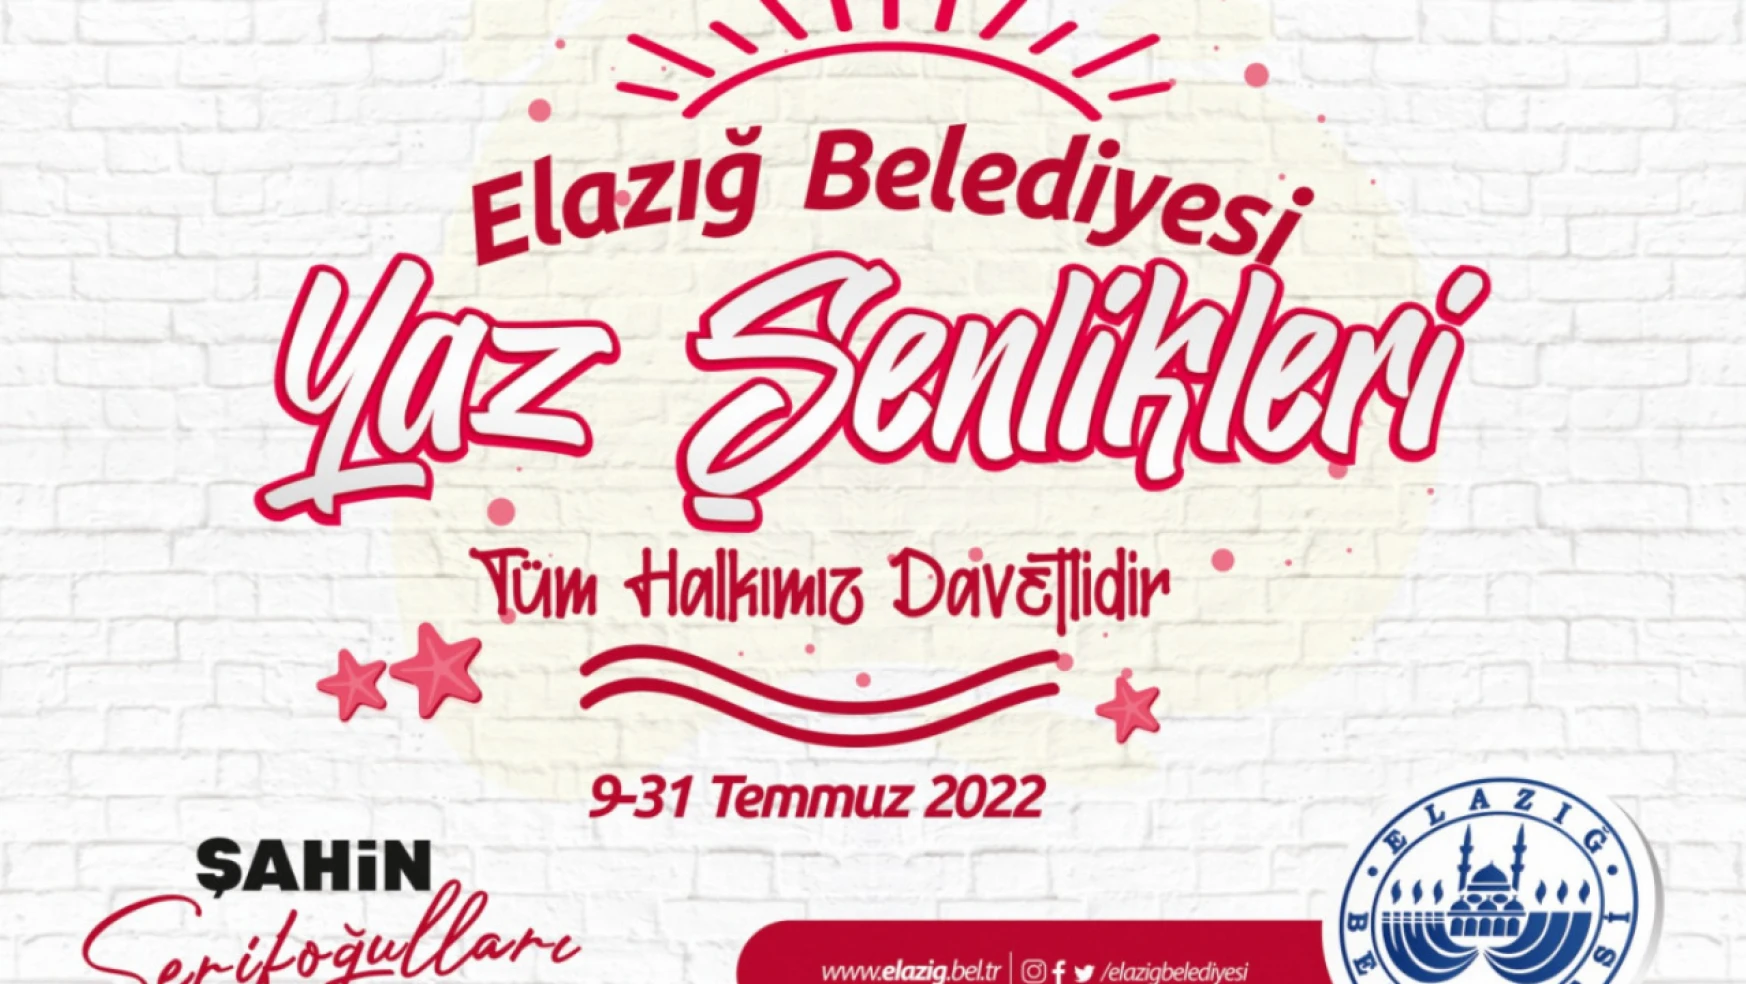 Sinan Akçıl, Elazığ belediyesi yaz şenlikleri'nde elazığlılarla buluşacak